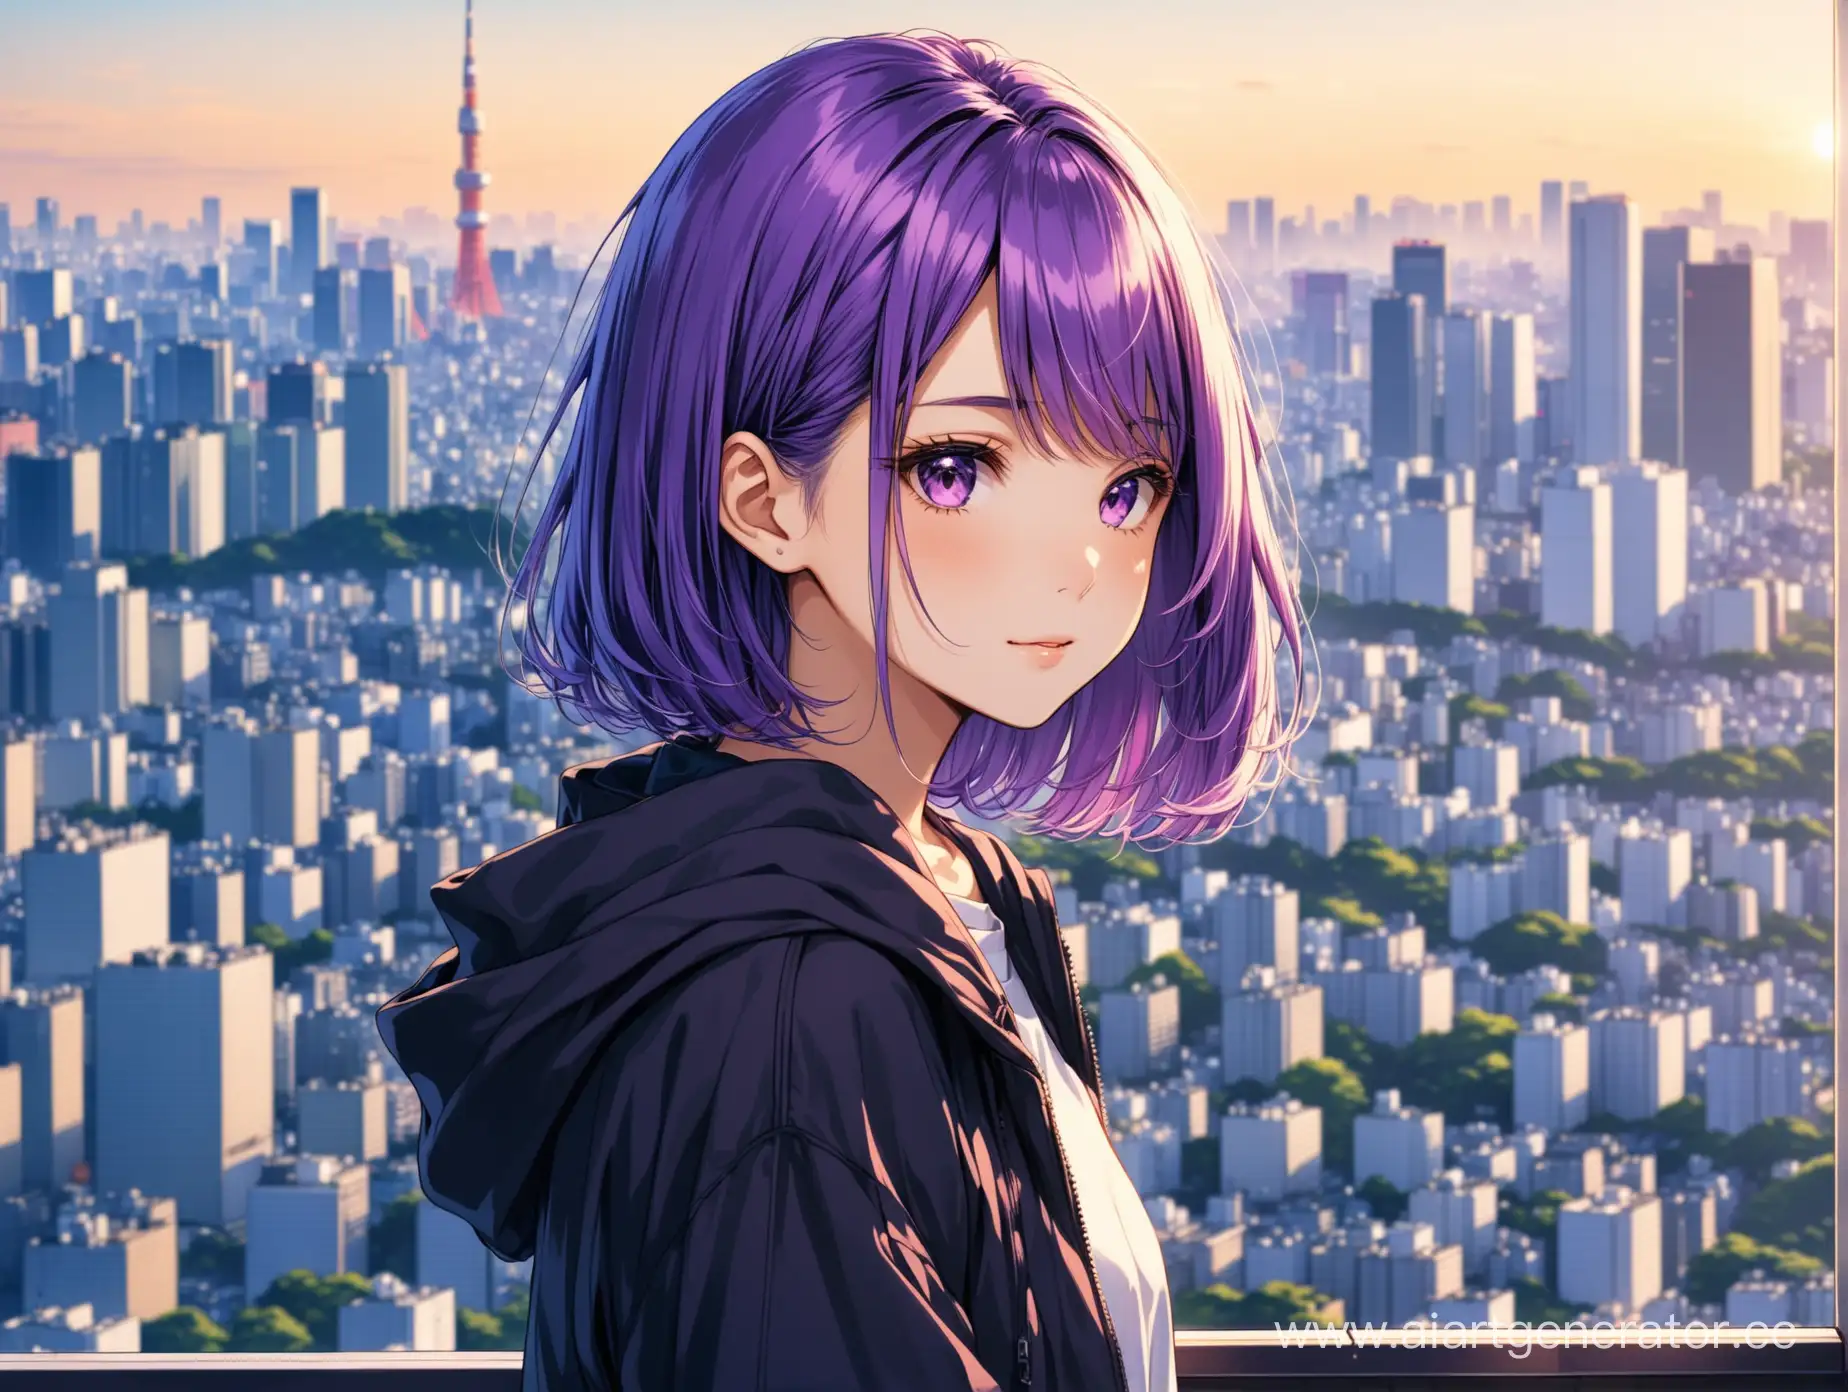 Девушк, фиолетовые волосы , 16 лет, на фоне современного Токио, средняя длина волос